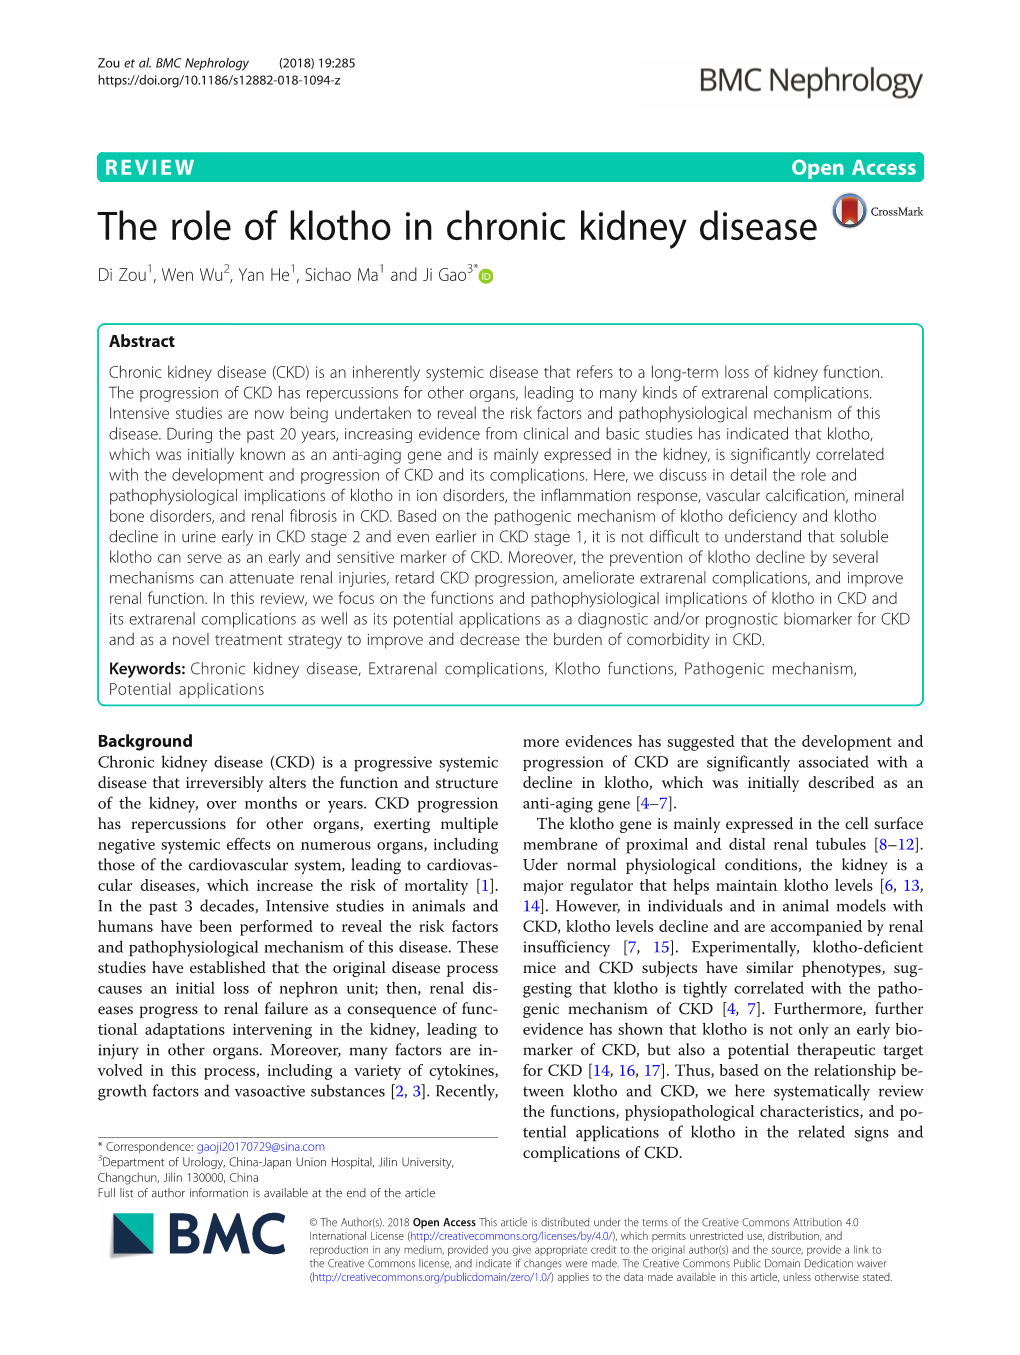 The Role of Klotho in Chronic Kidney Disease Di Zou1, Wen Wu2, Yan He1, Sichao Ma1 and Ji Gao3*